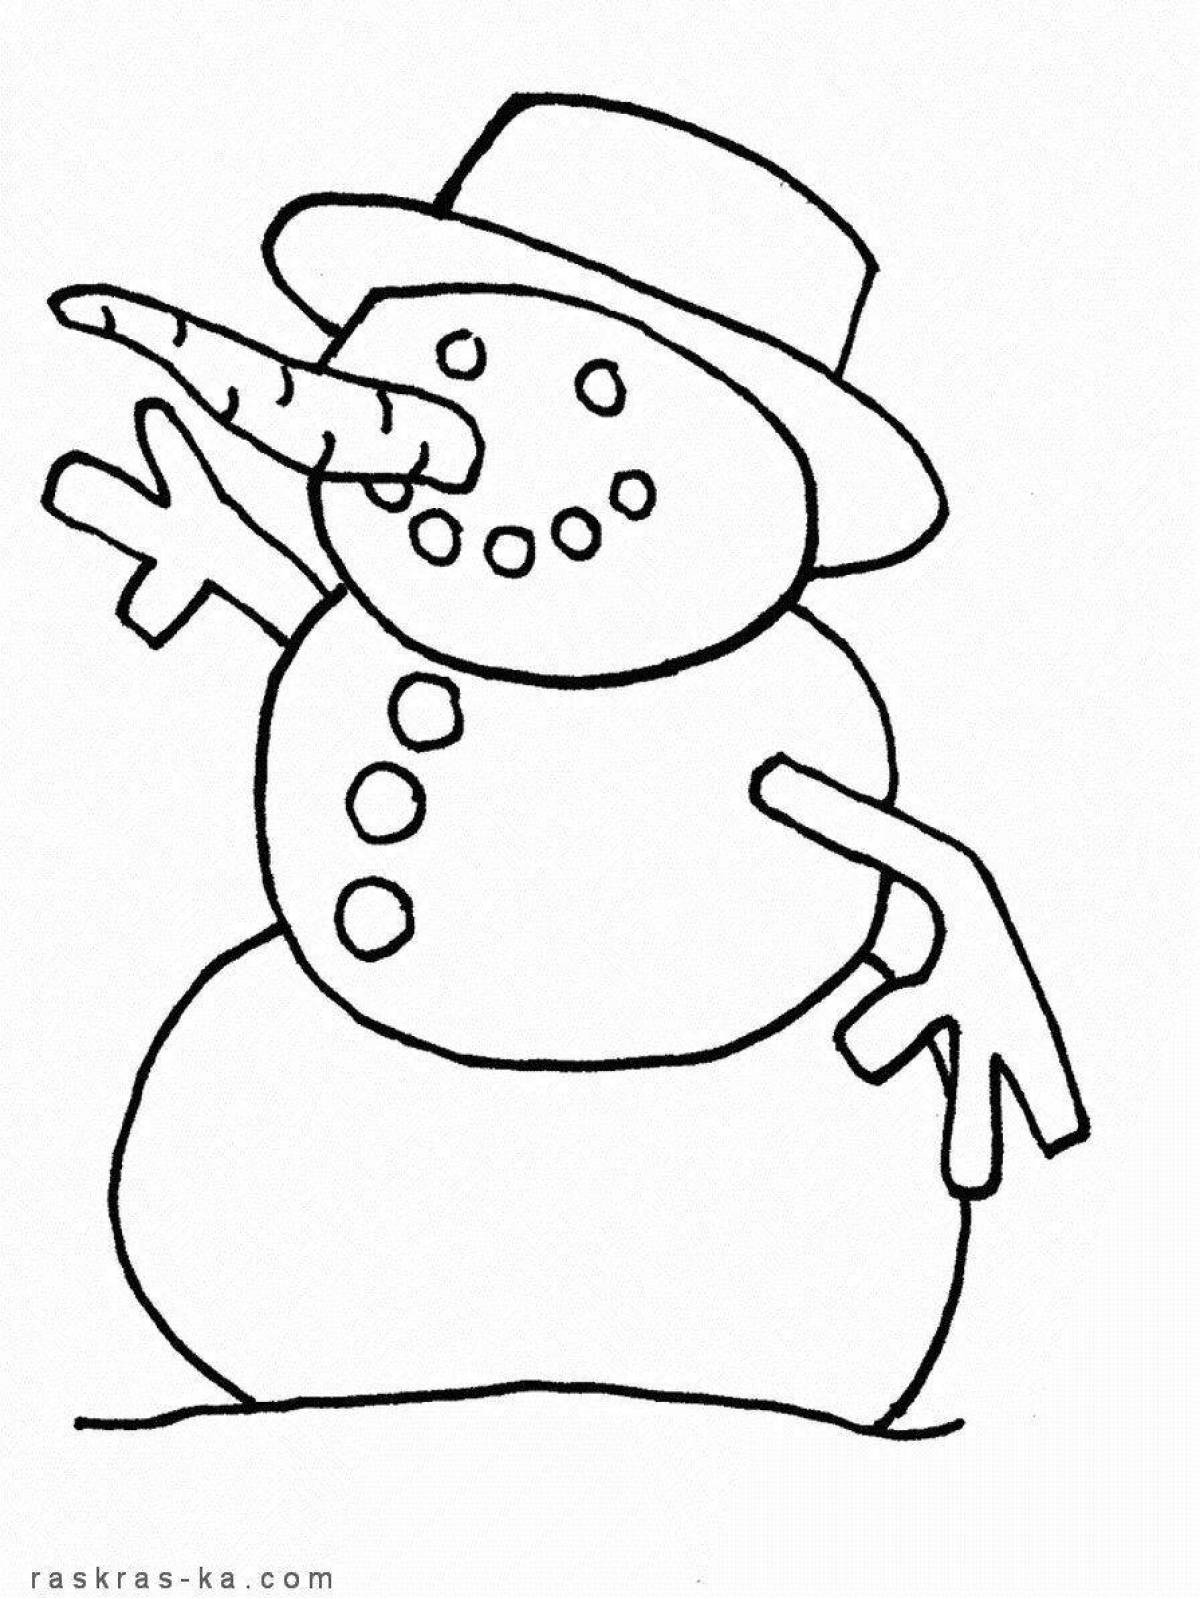 Трафарет снеговика для рисования